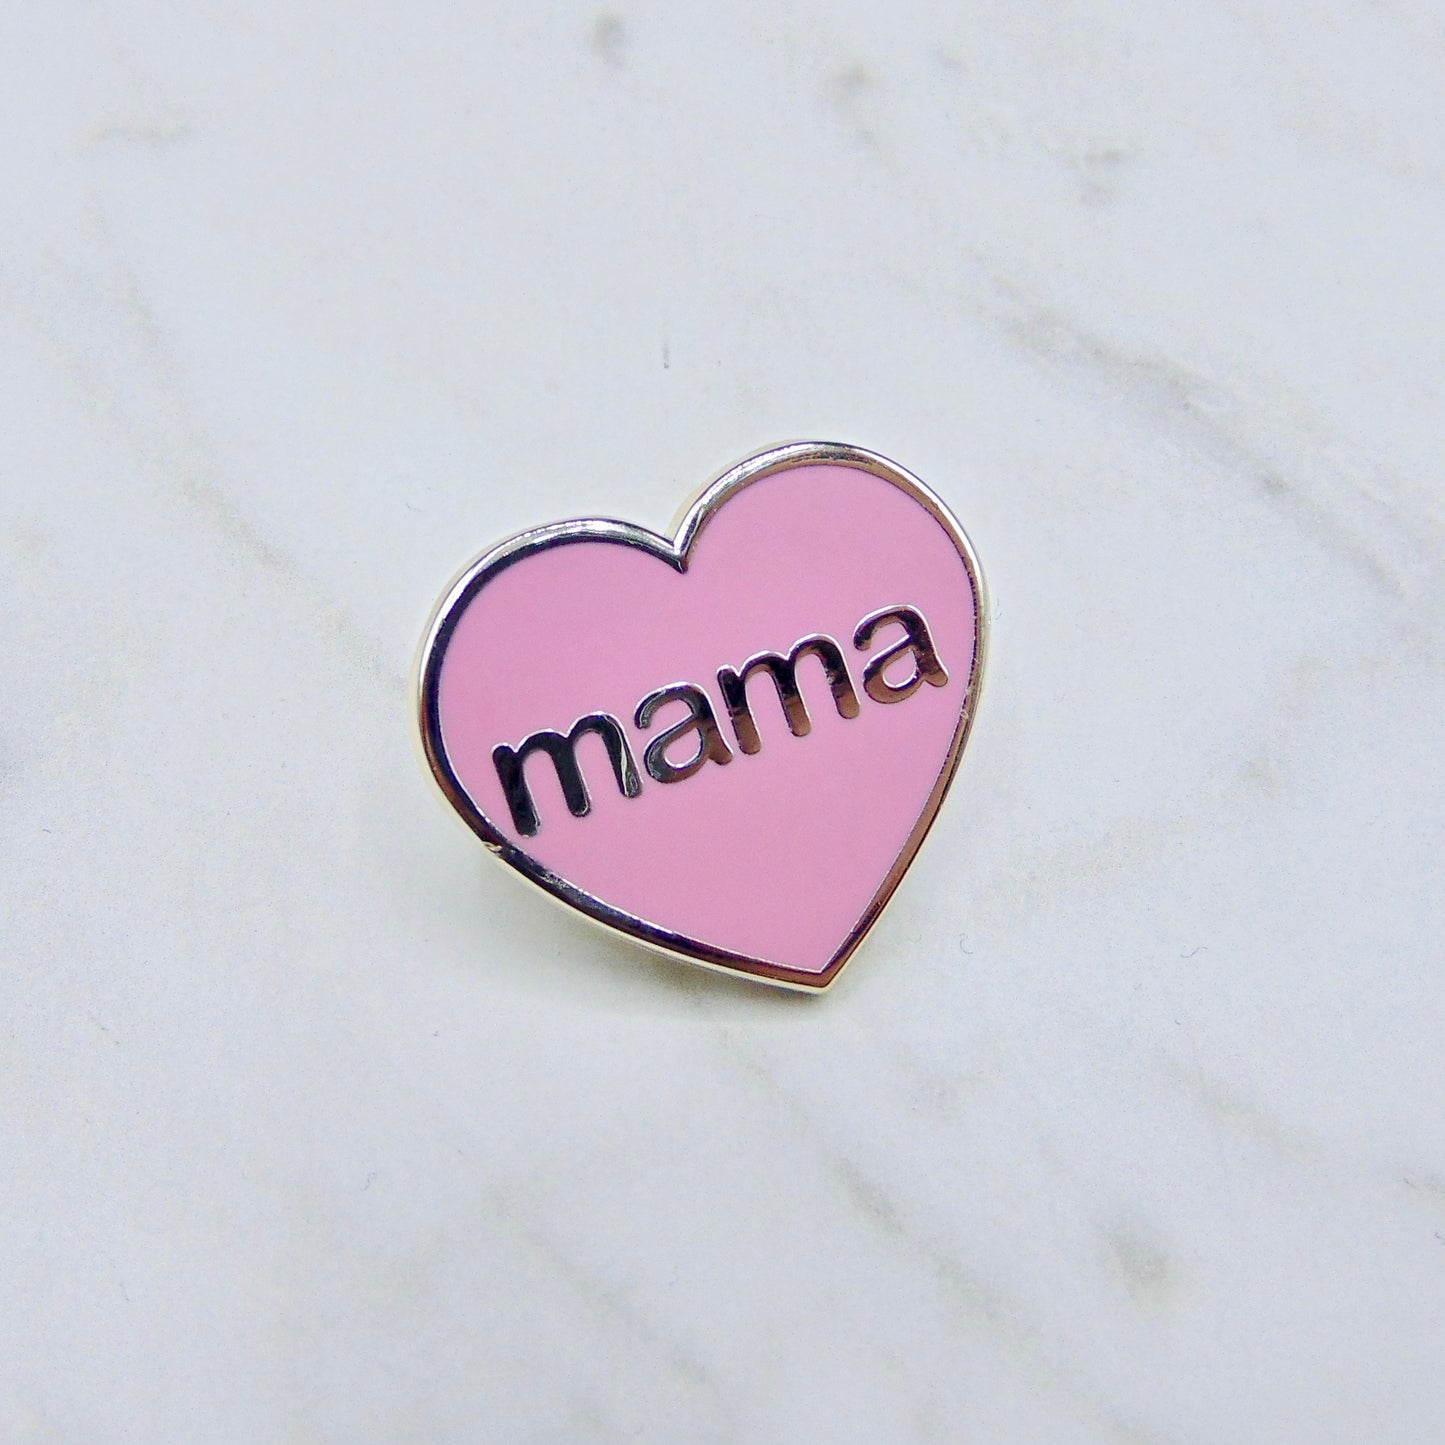 Mama Pin Badge - Pink and Silver